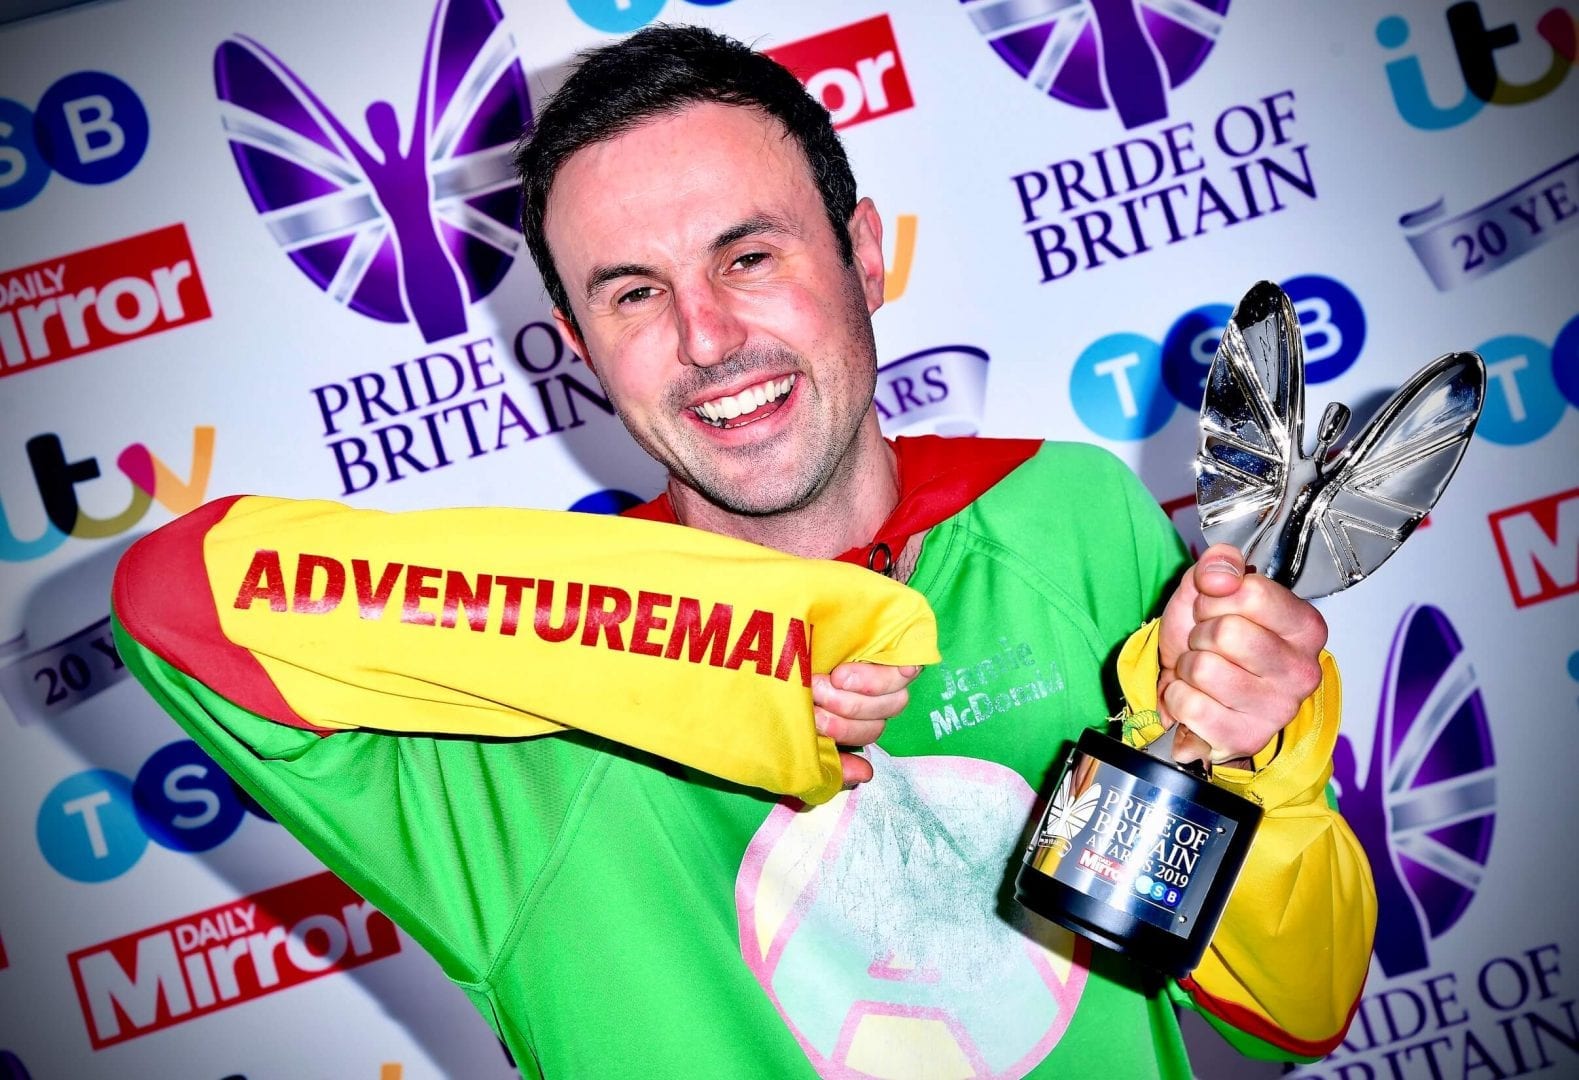 adventureman-pride-of-britain-fundraiser-author-motivational-speakers